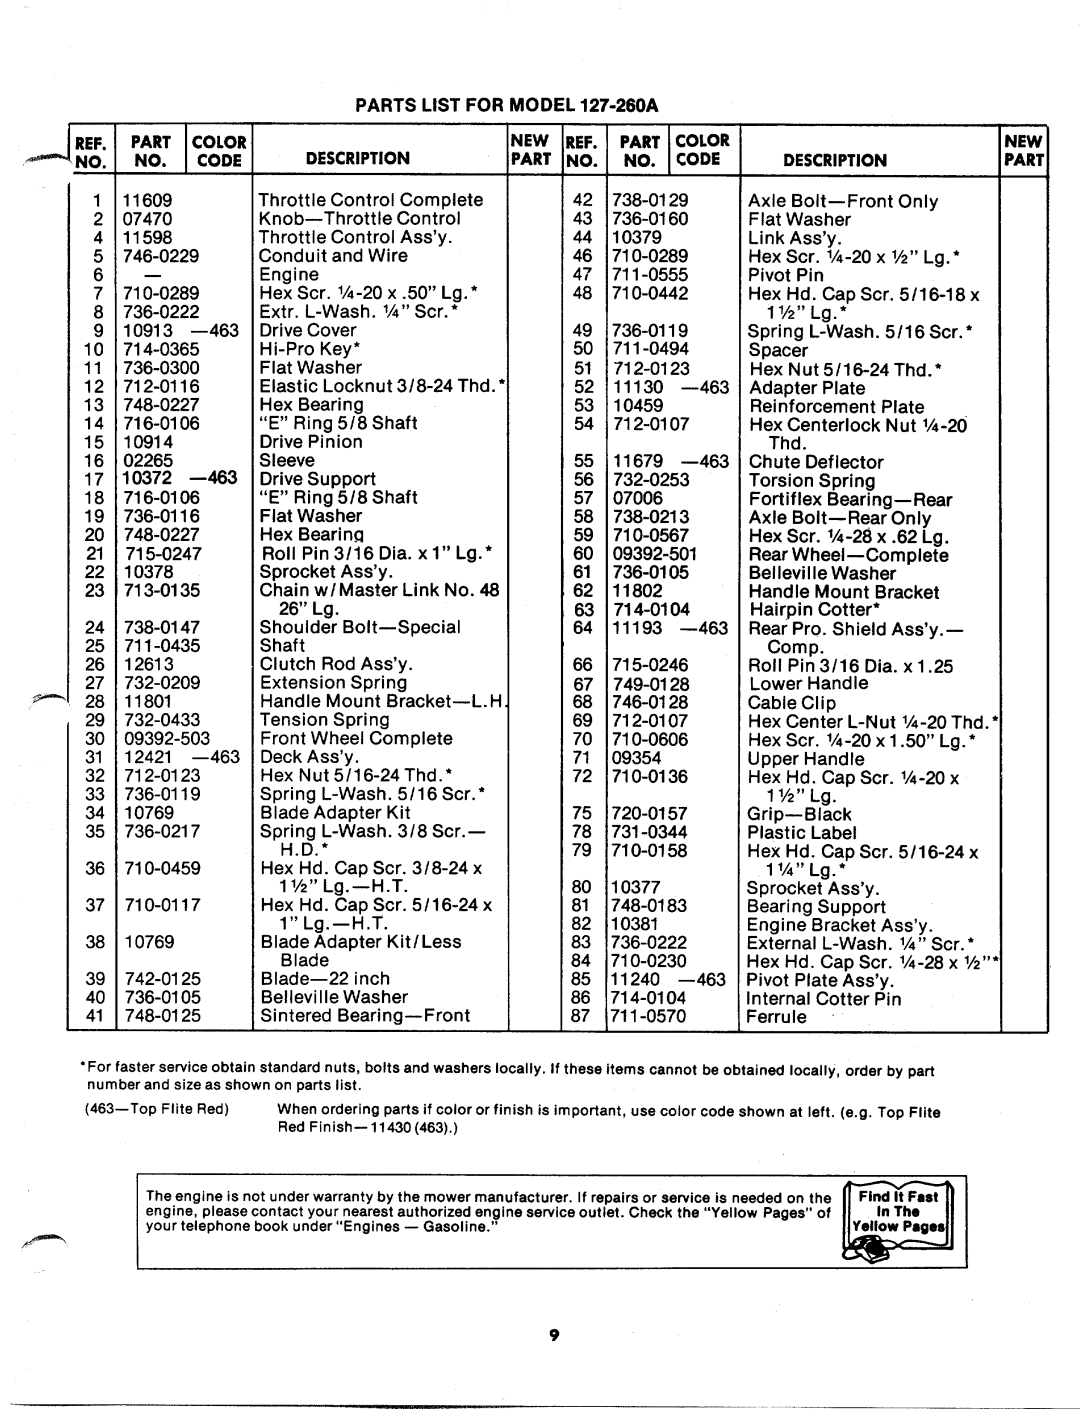 MTD 127-260-300, 127-260A manual 